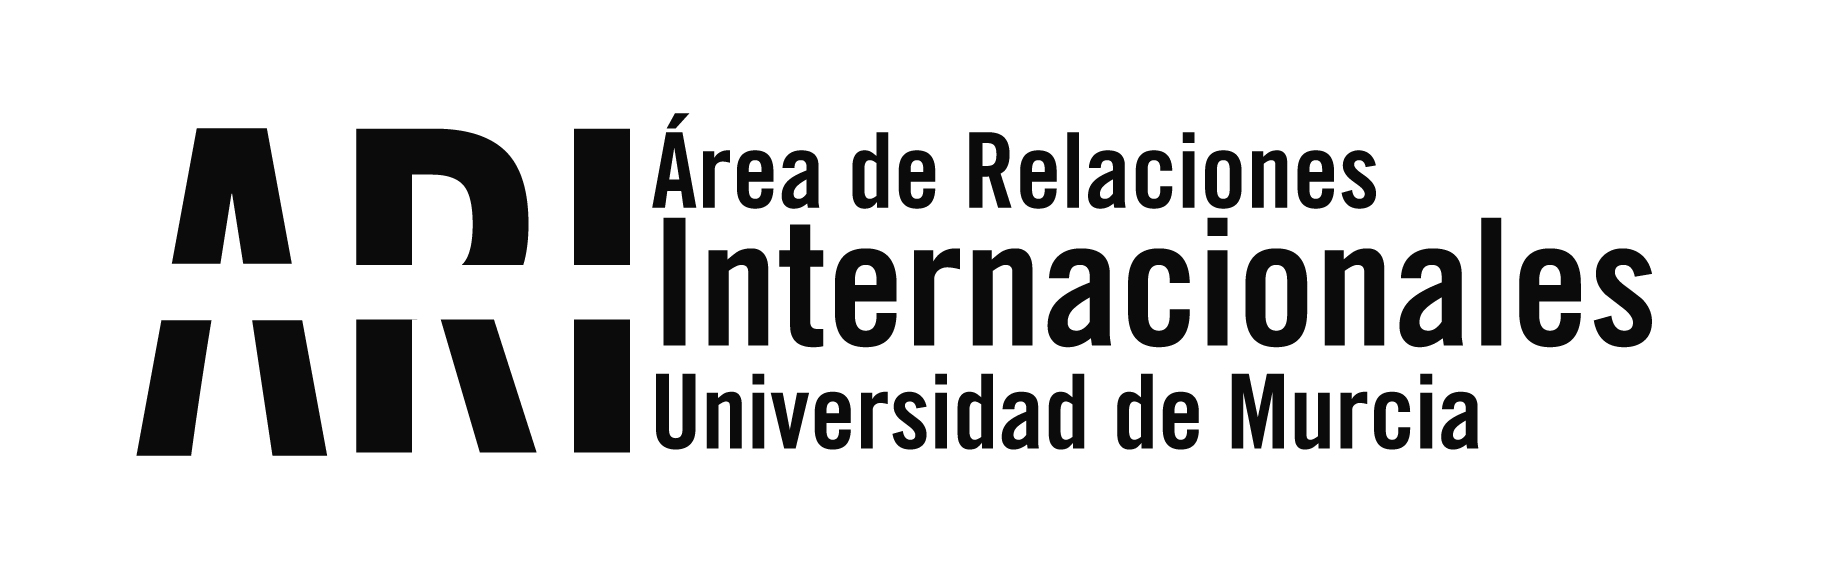 Sesiones de orientación para los nuevos alumnos internacionales de la UM - Área de Relaciones Internacionales